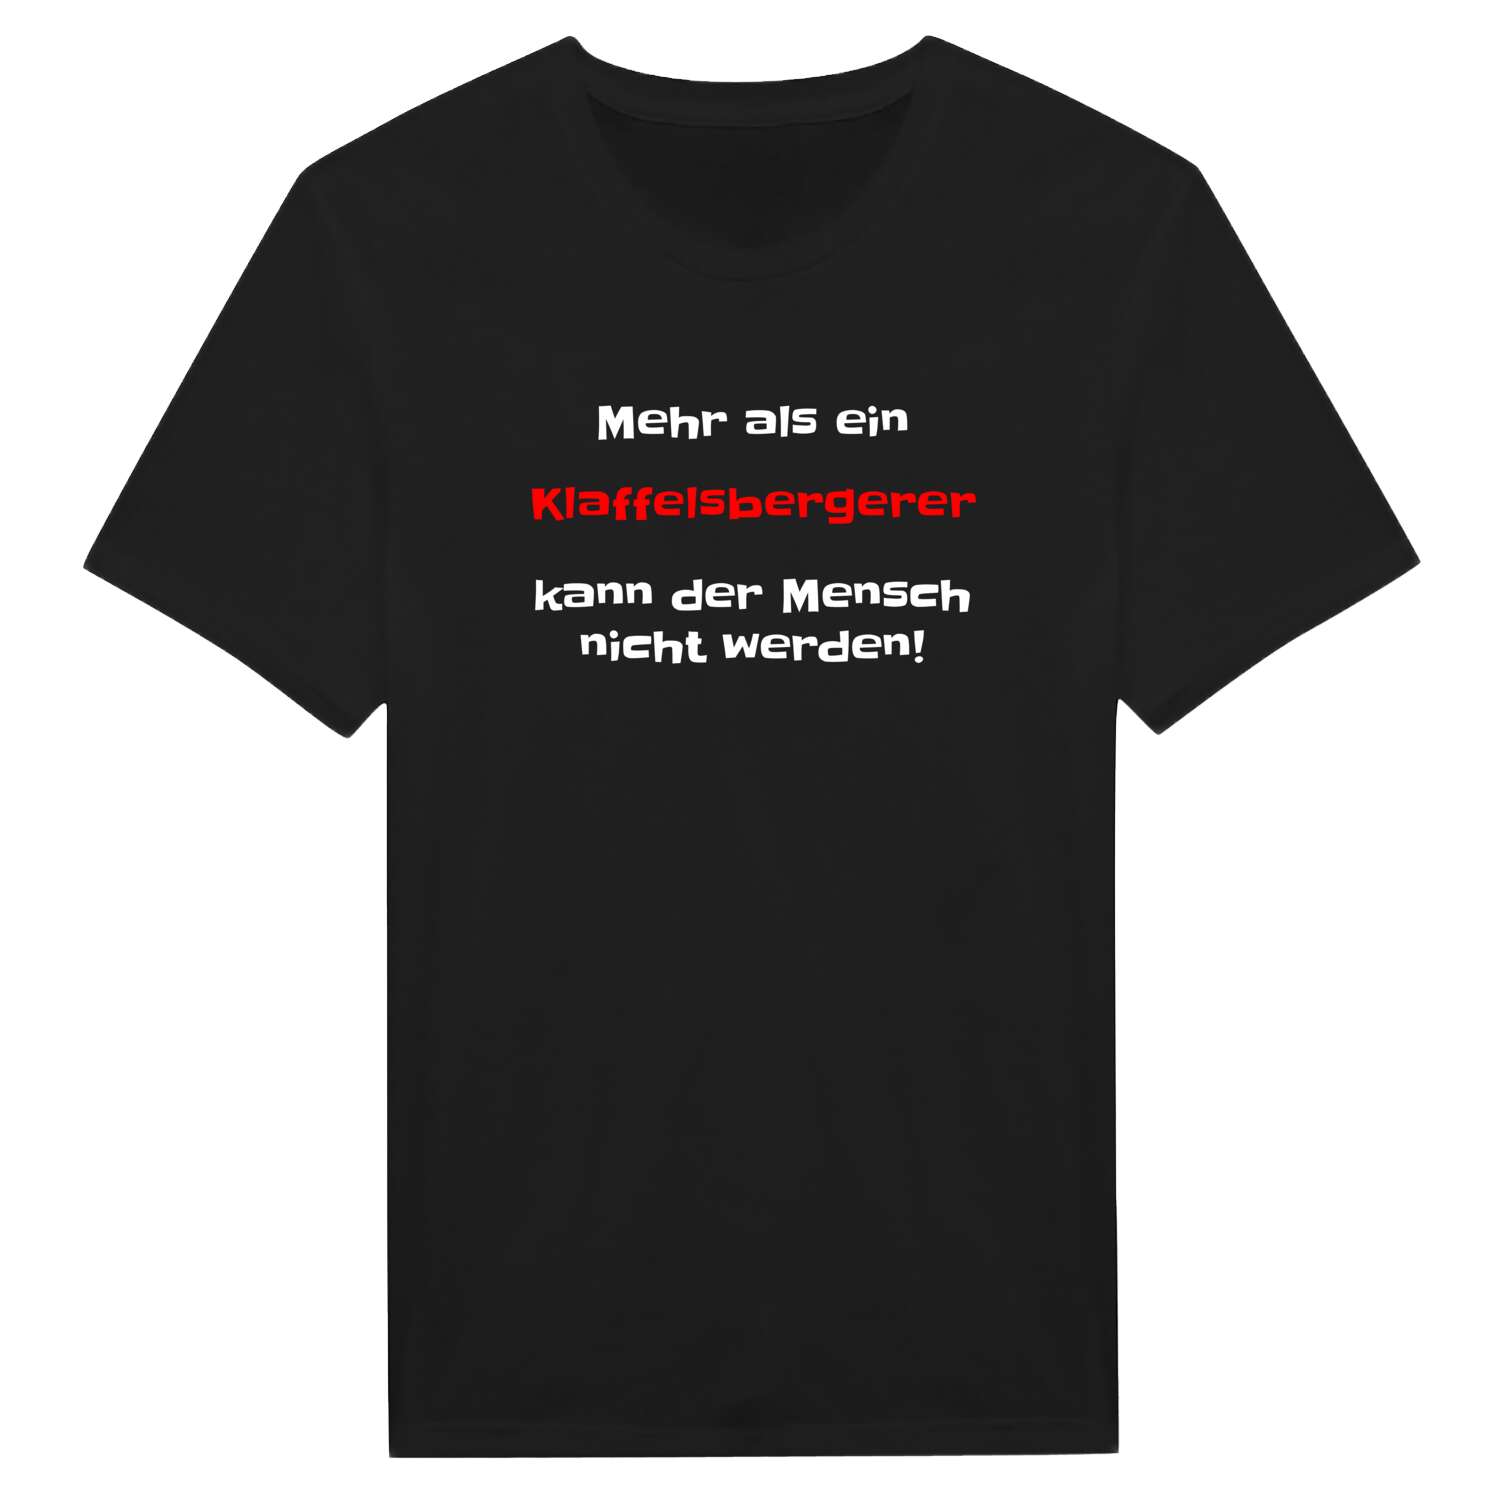 Klaffelsberger T-Shirt »Mehr als ein«